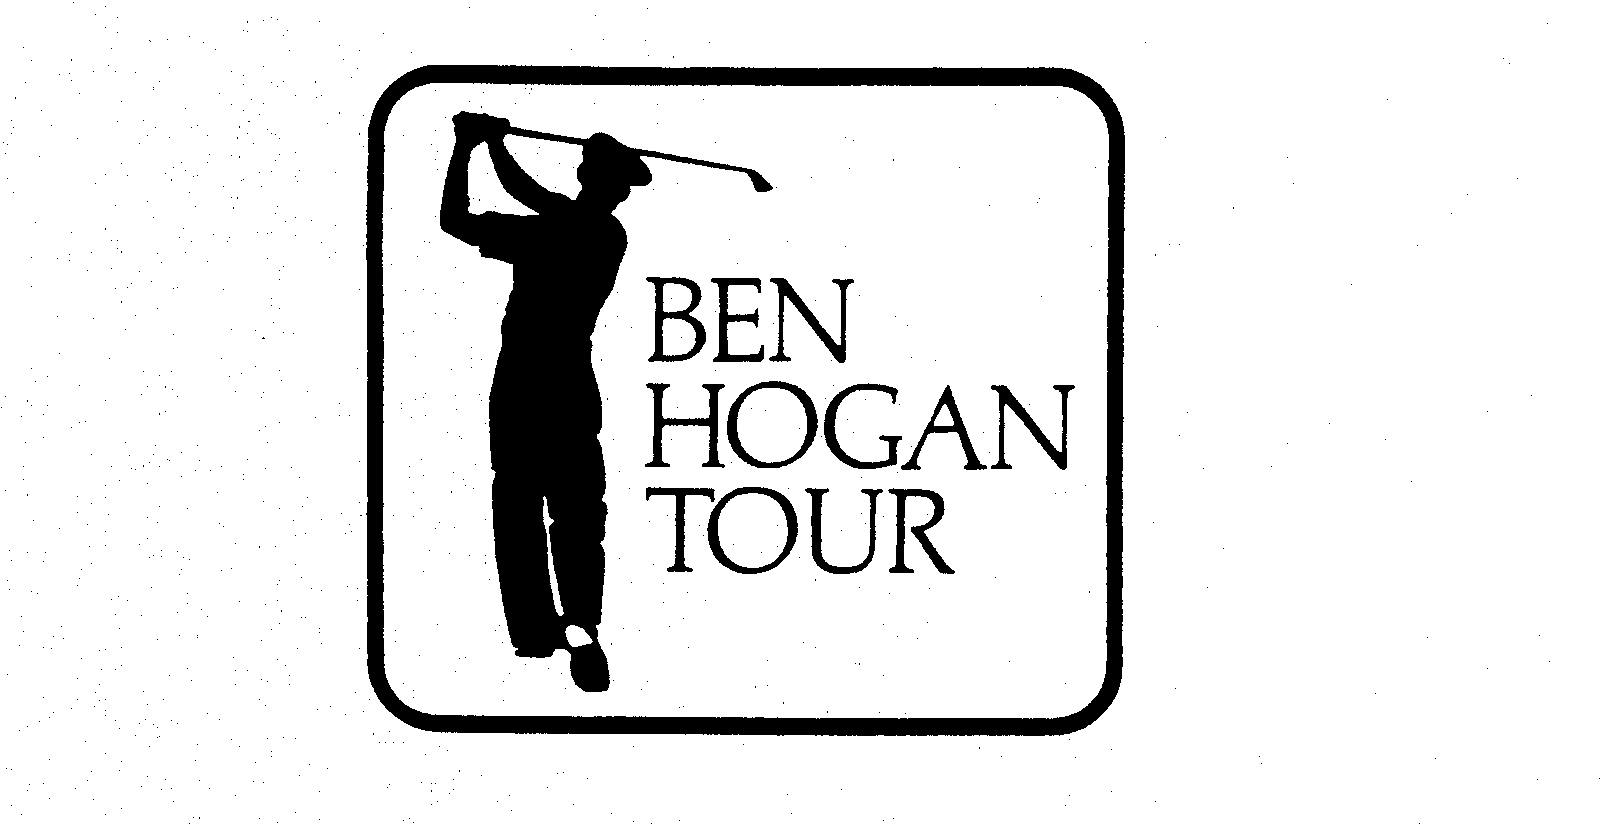  BEN HOGAN TOUR